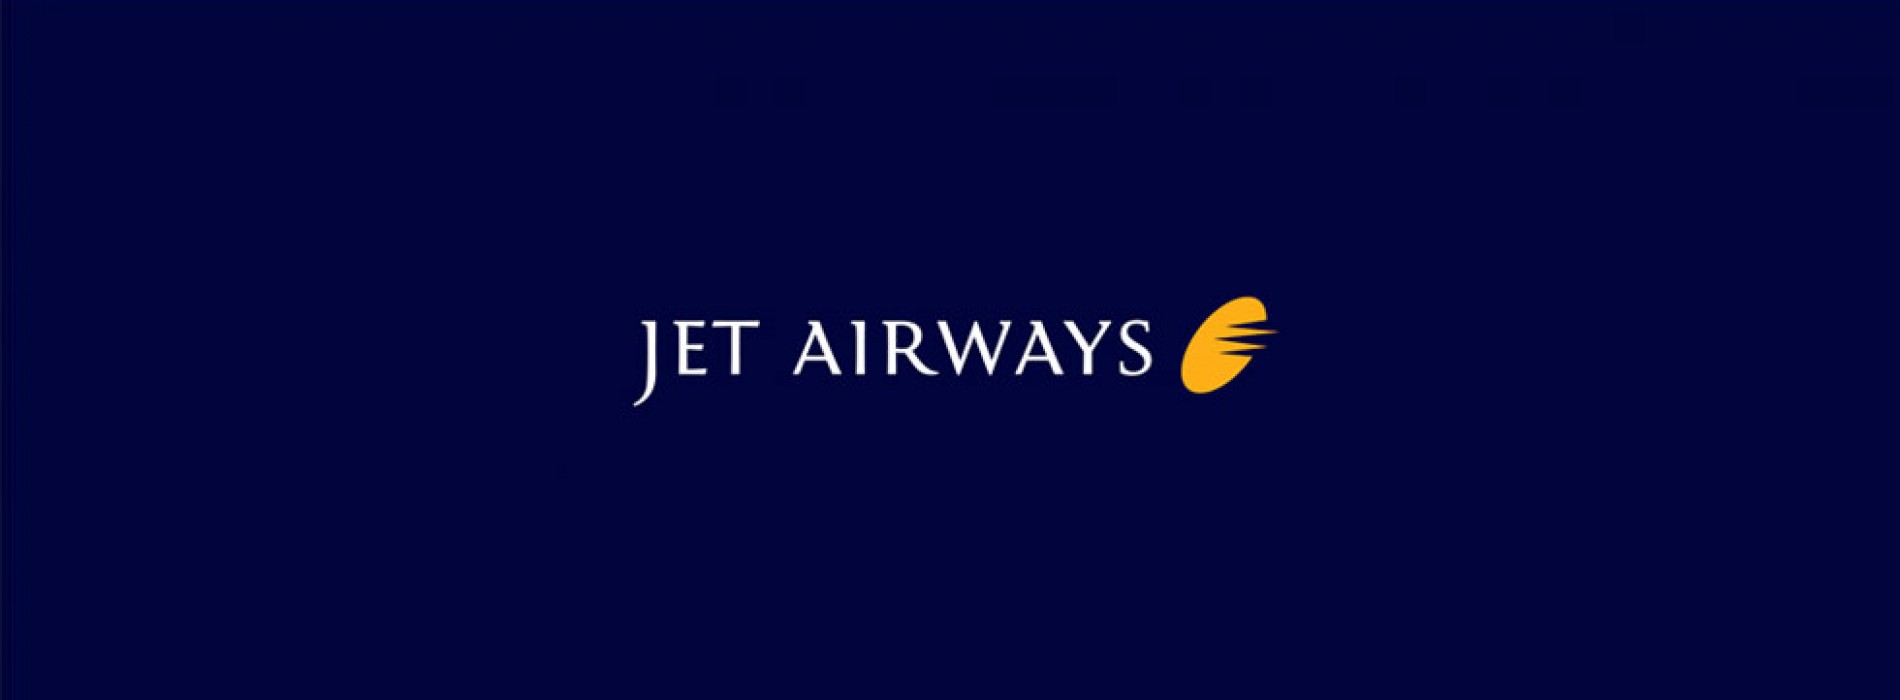 Jet Airways brings back B777s to boost capacity